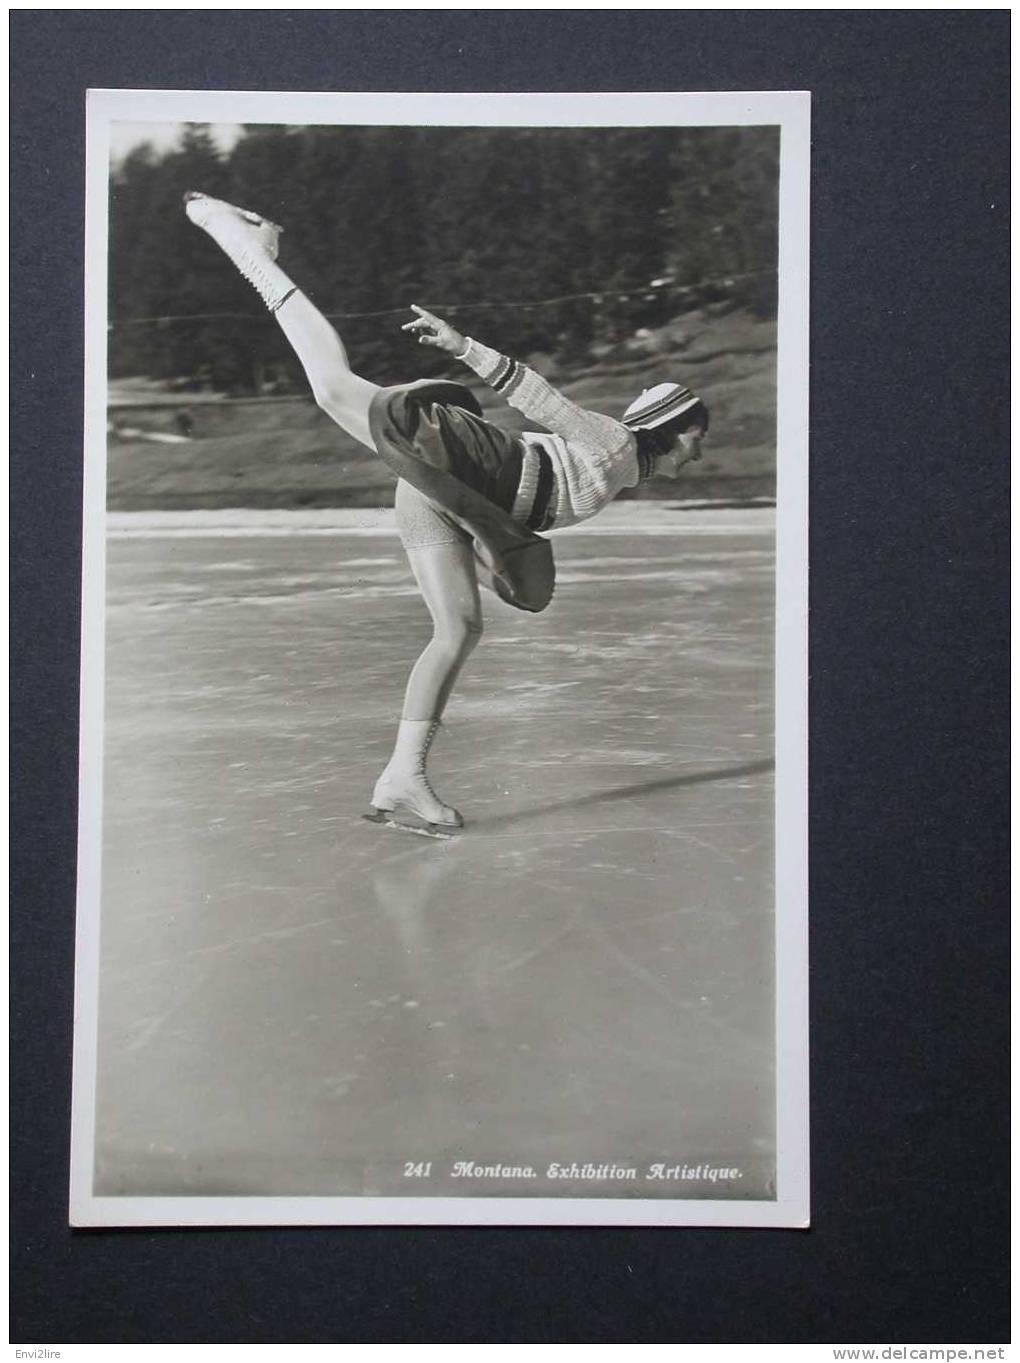 Ref630 Cpa Carte Photo 241. Montana Exhibition Artistique Patinage. Photo J. Deprez. Femme En Jupe Patinant - Figure Skating